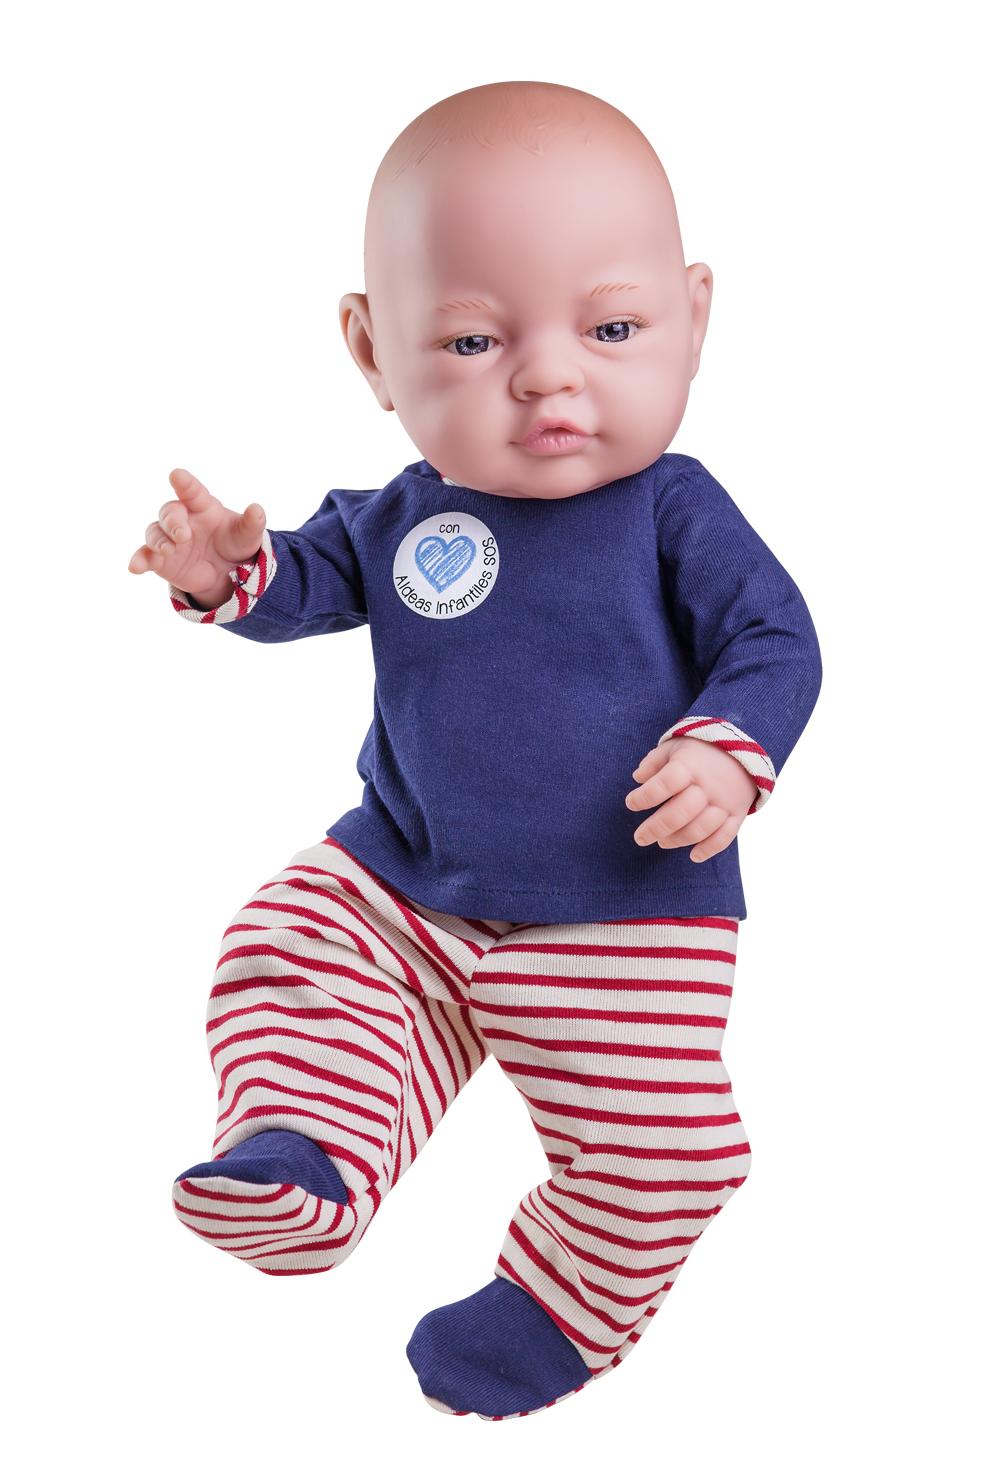 Realistické miminko - chlapeček - Lojzík od firmy Paola Reina ze Španělska